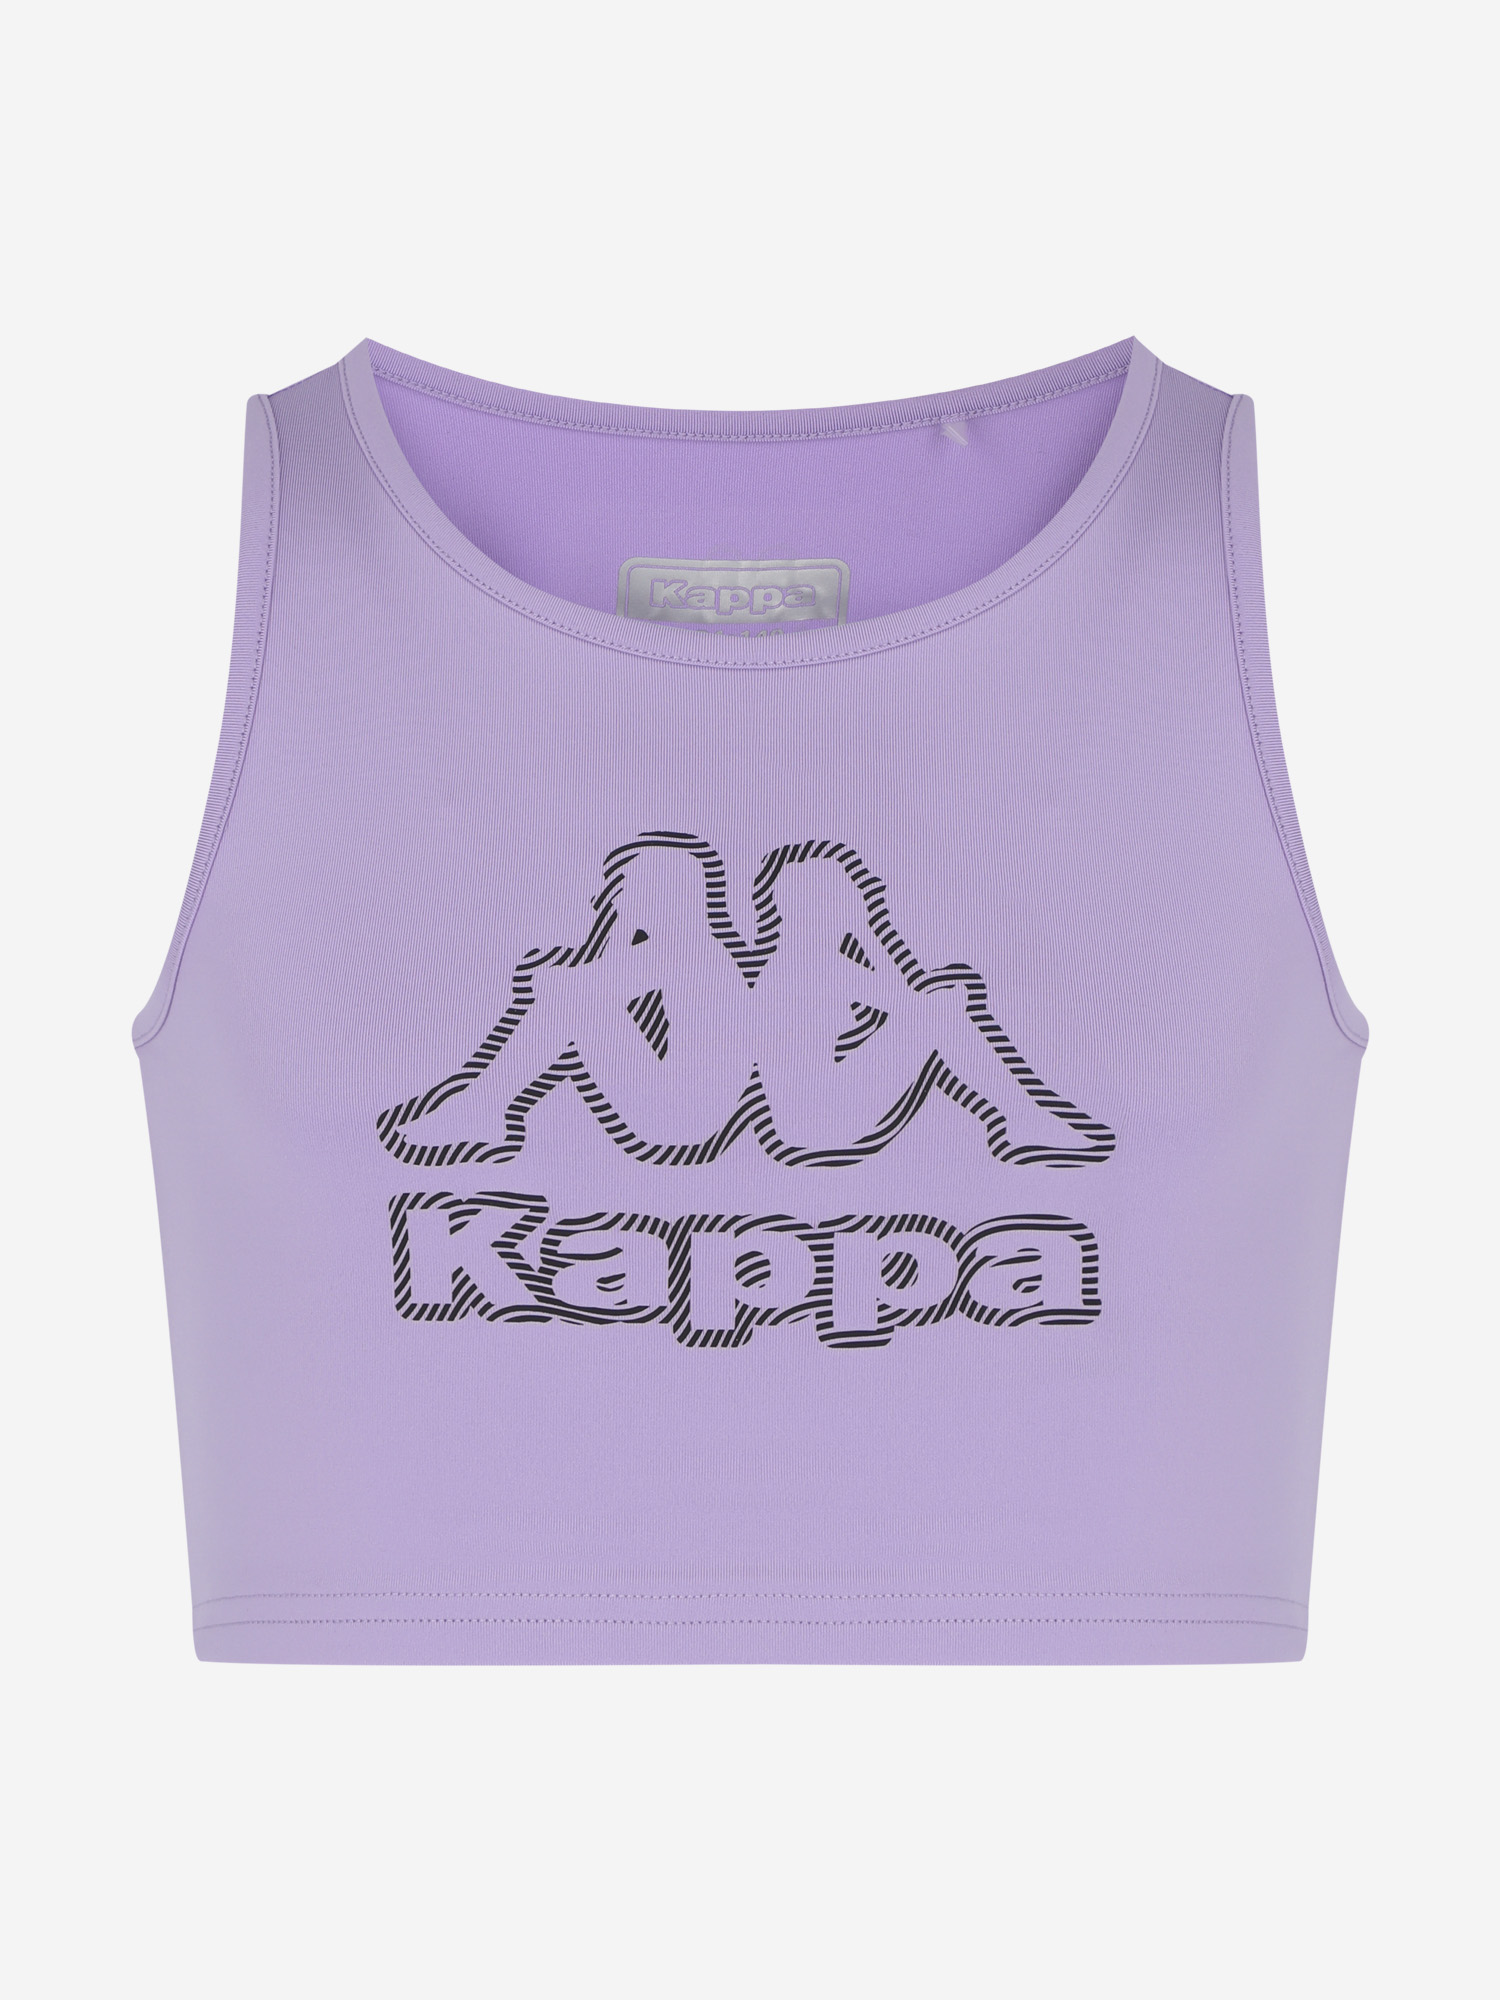 Спортивный топ бра для девочек Kappa, Фиолетовый